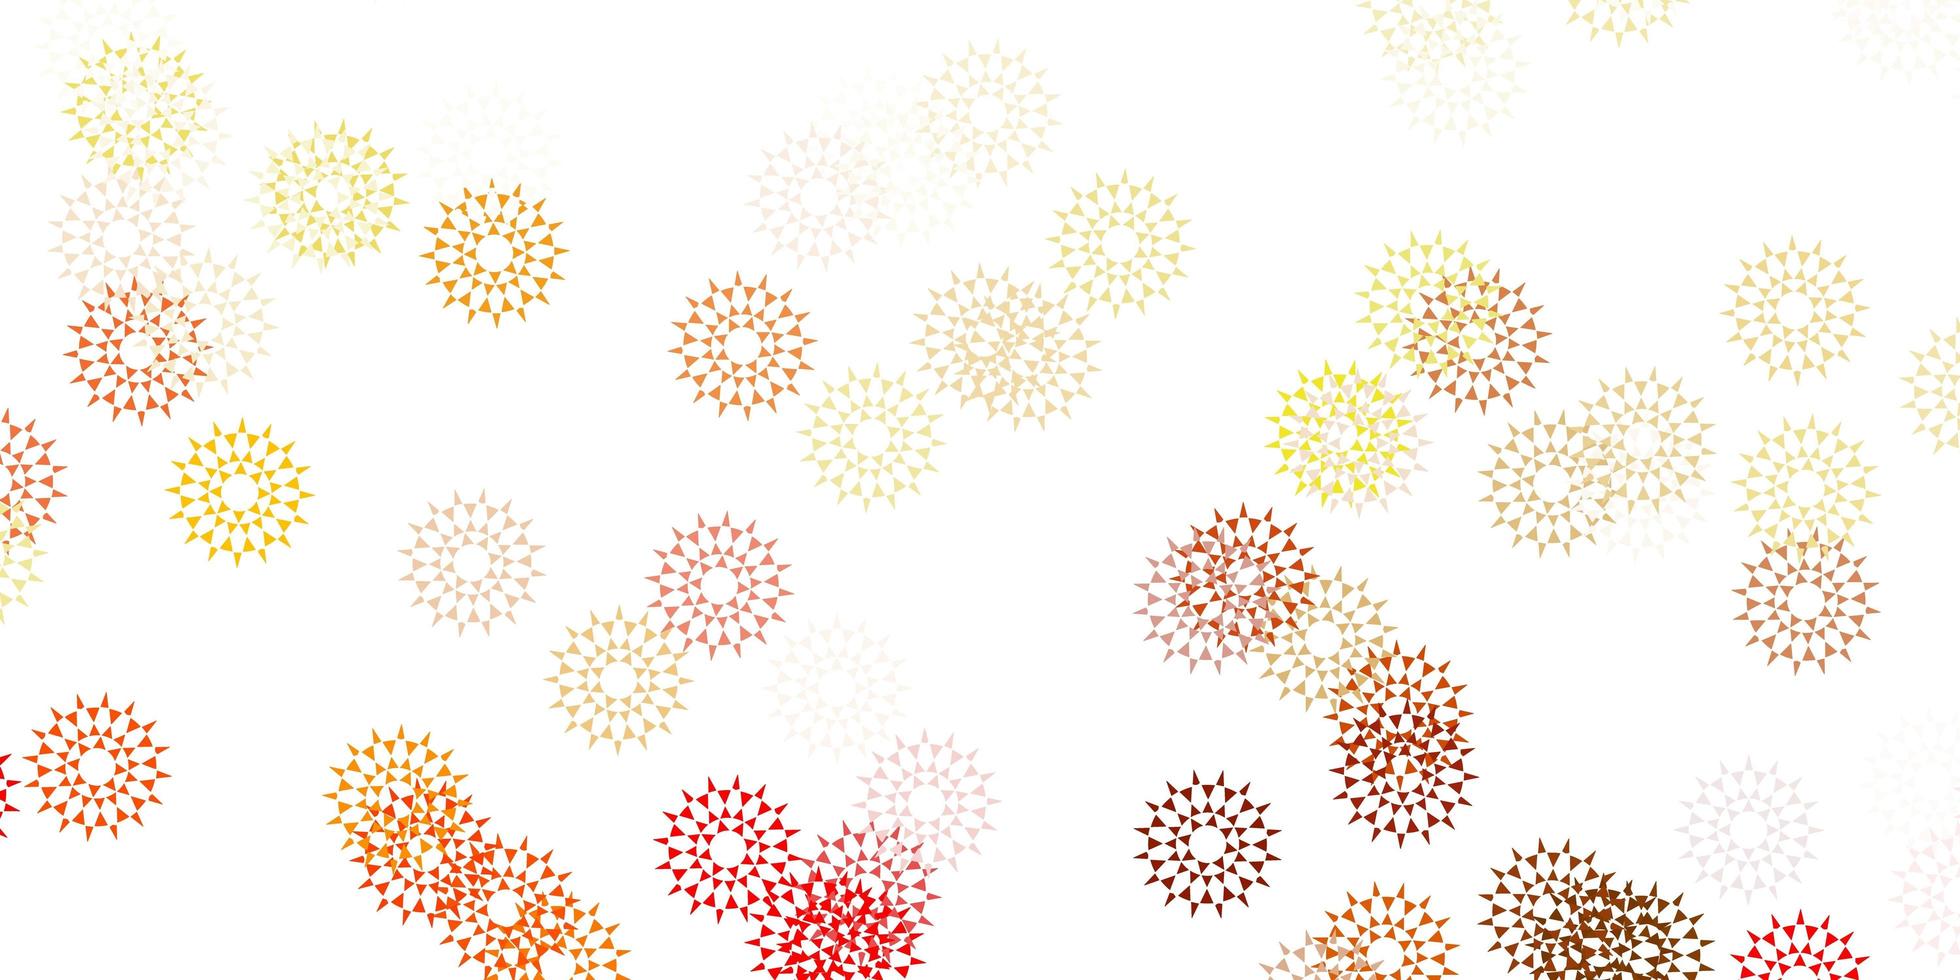 motif de doodle vecteur rouge et jaune clair avec des fleurs.